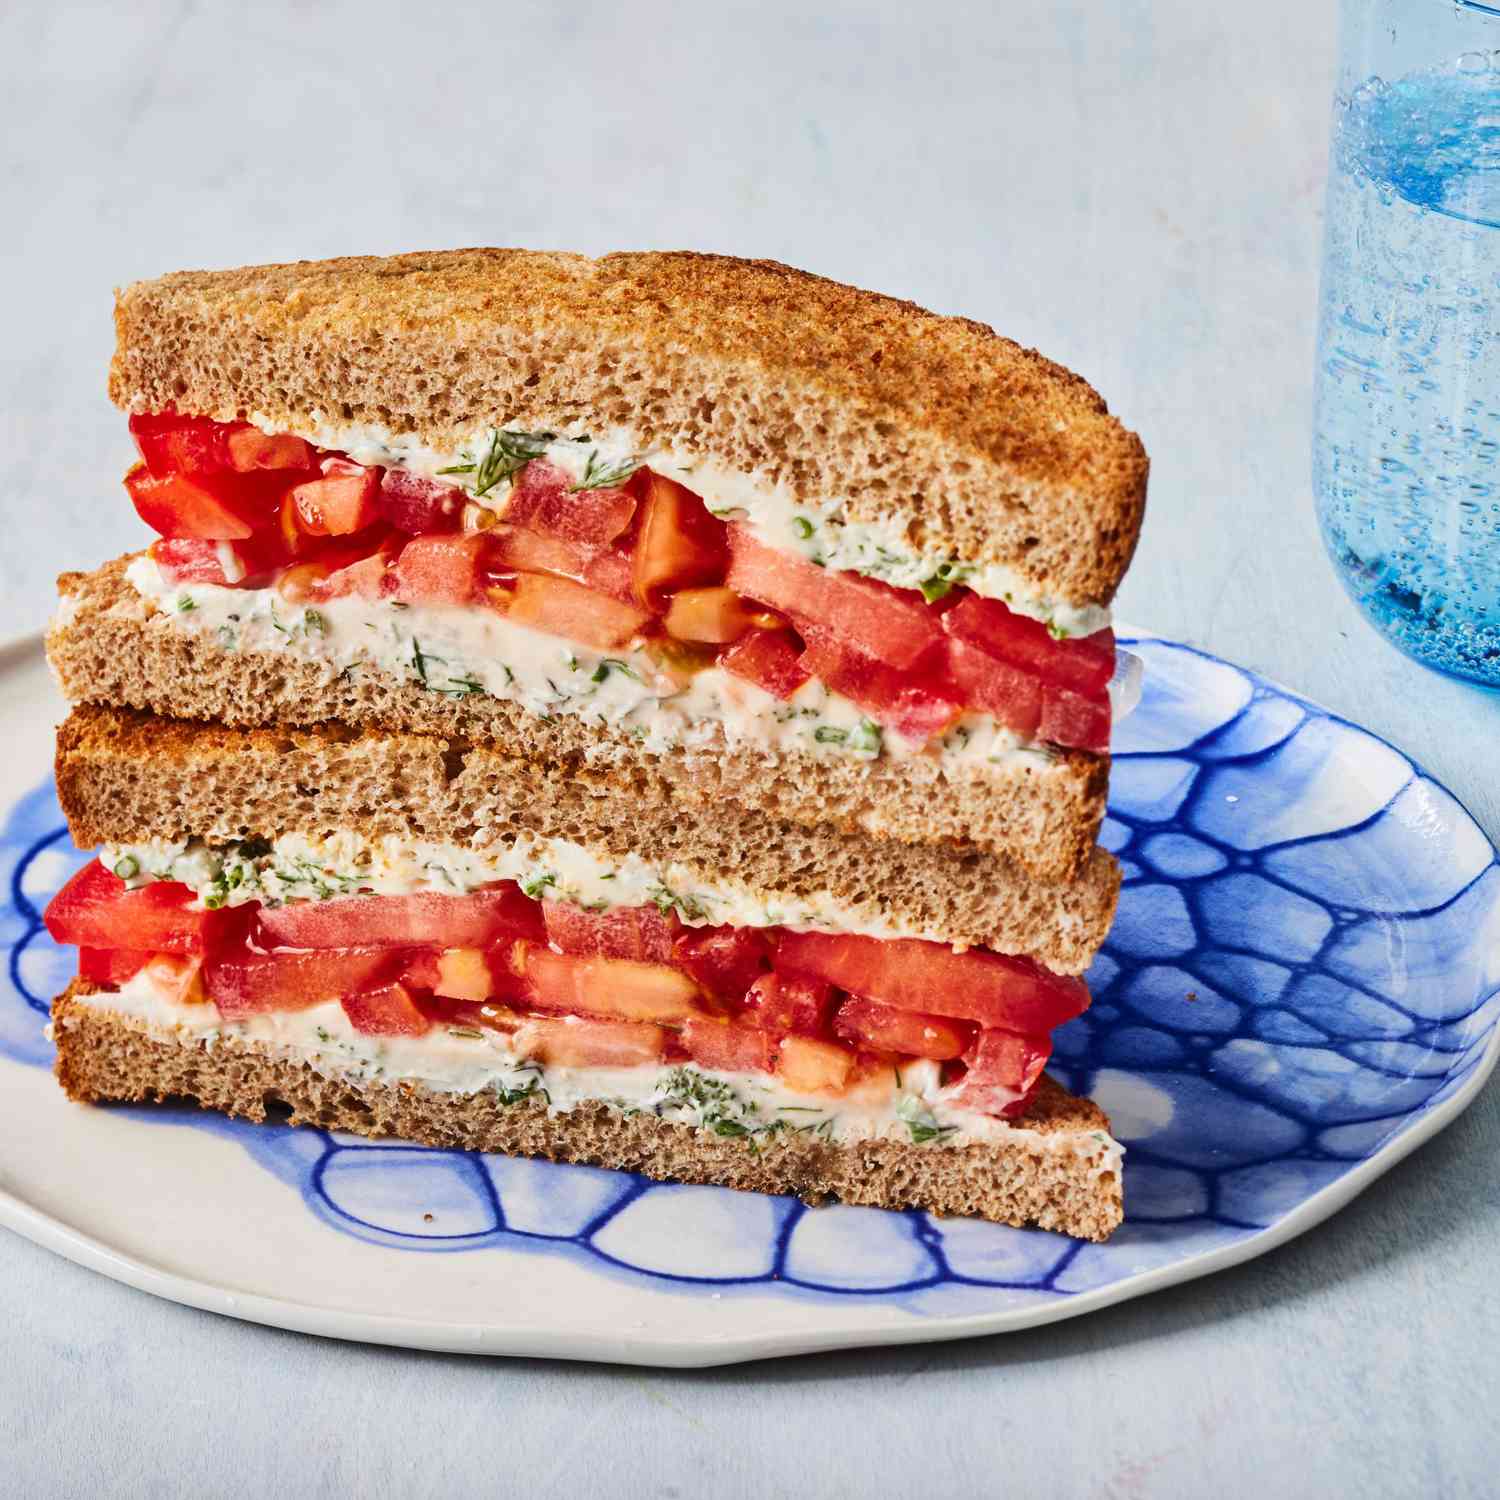 Foto de receta del sándwich de tomate